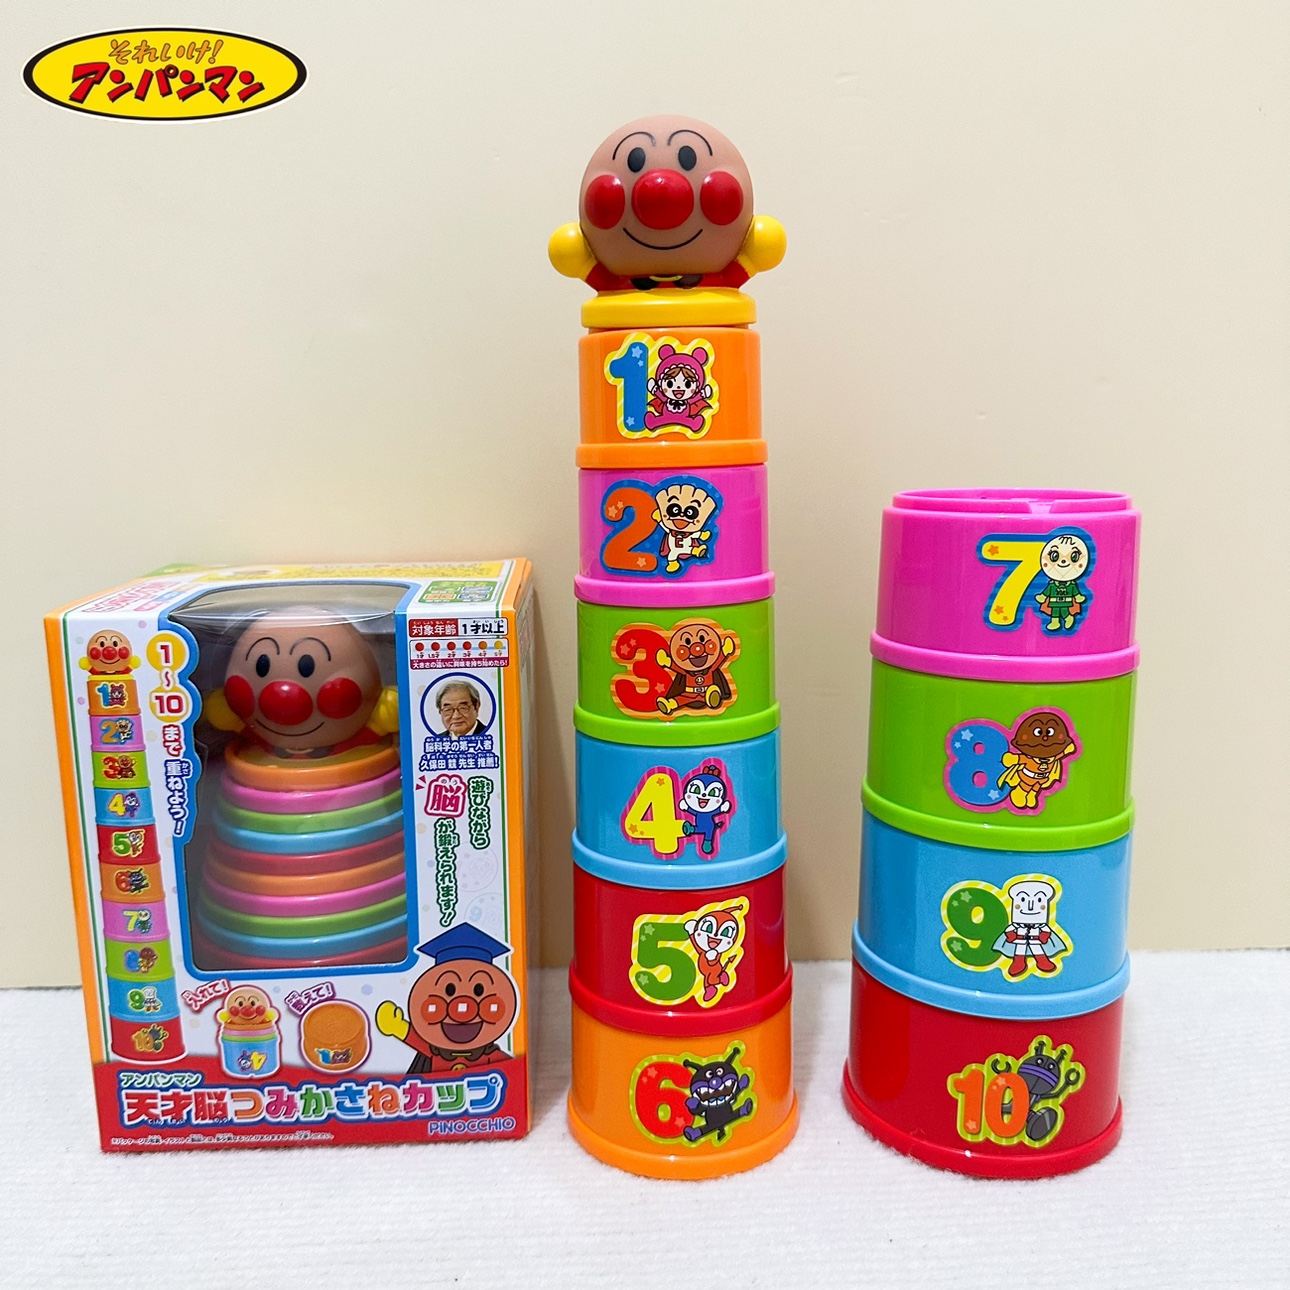 日本本土原装面包超人叠叠乐堆叠杯形状认知玩具配对宝宝早教益智